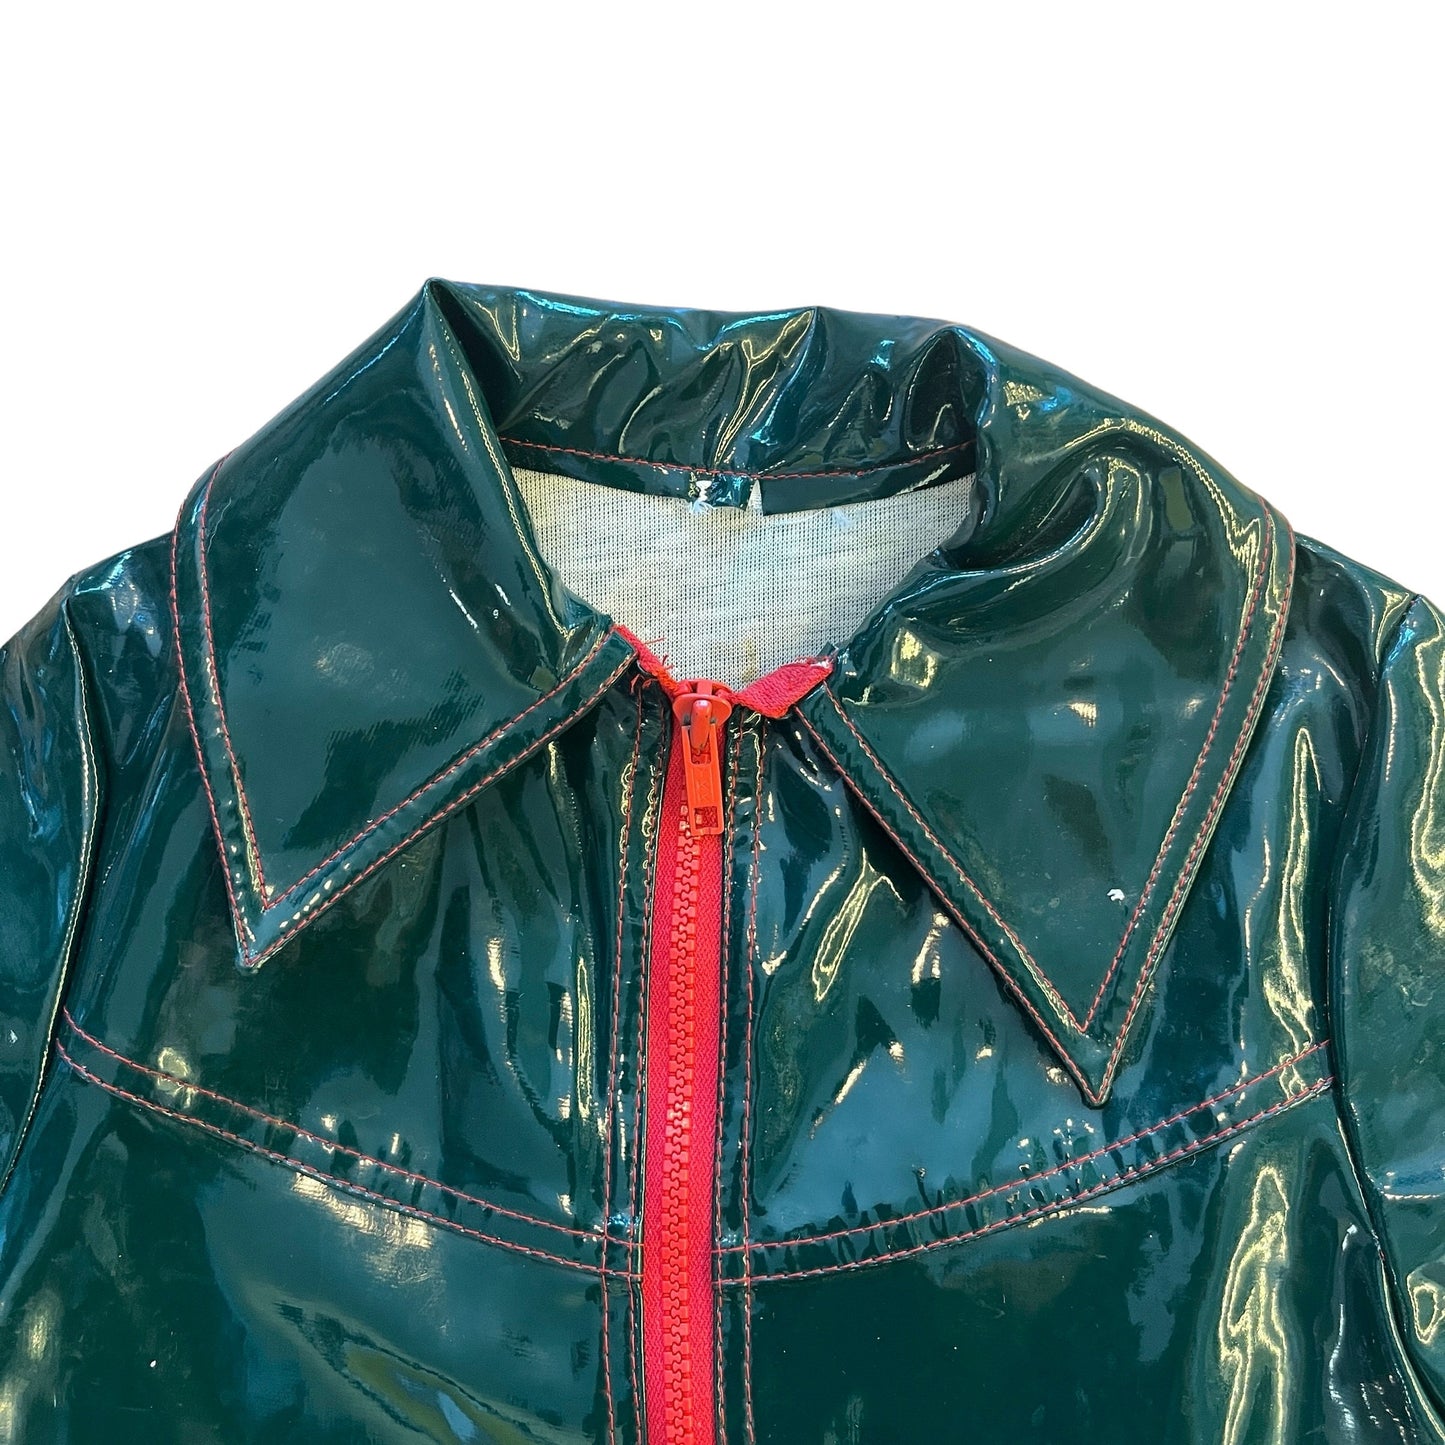 Vintage 60's Green Raincoat / 5-6Y